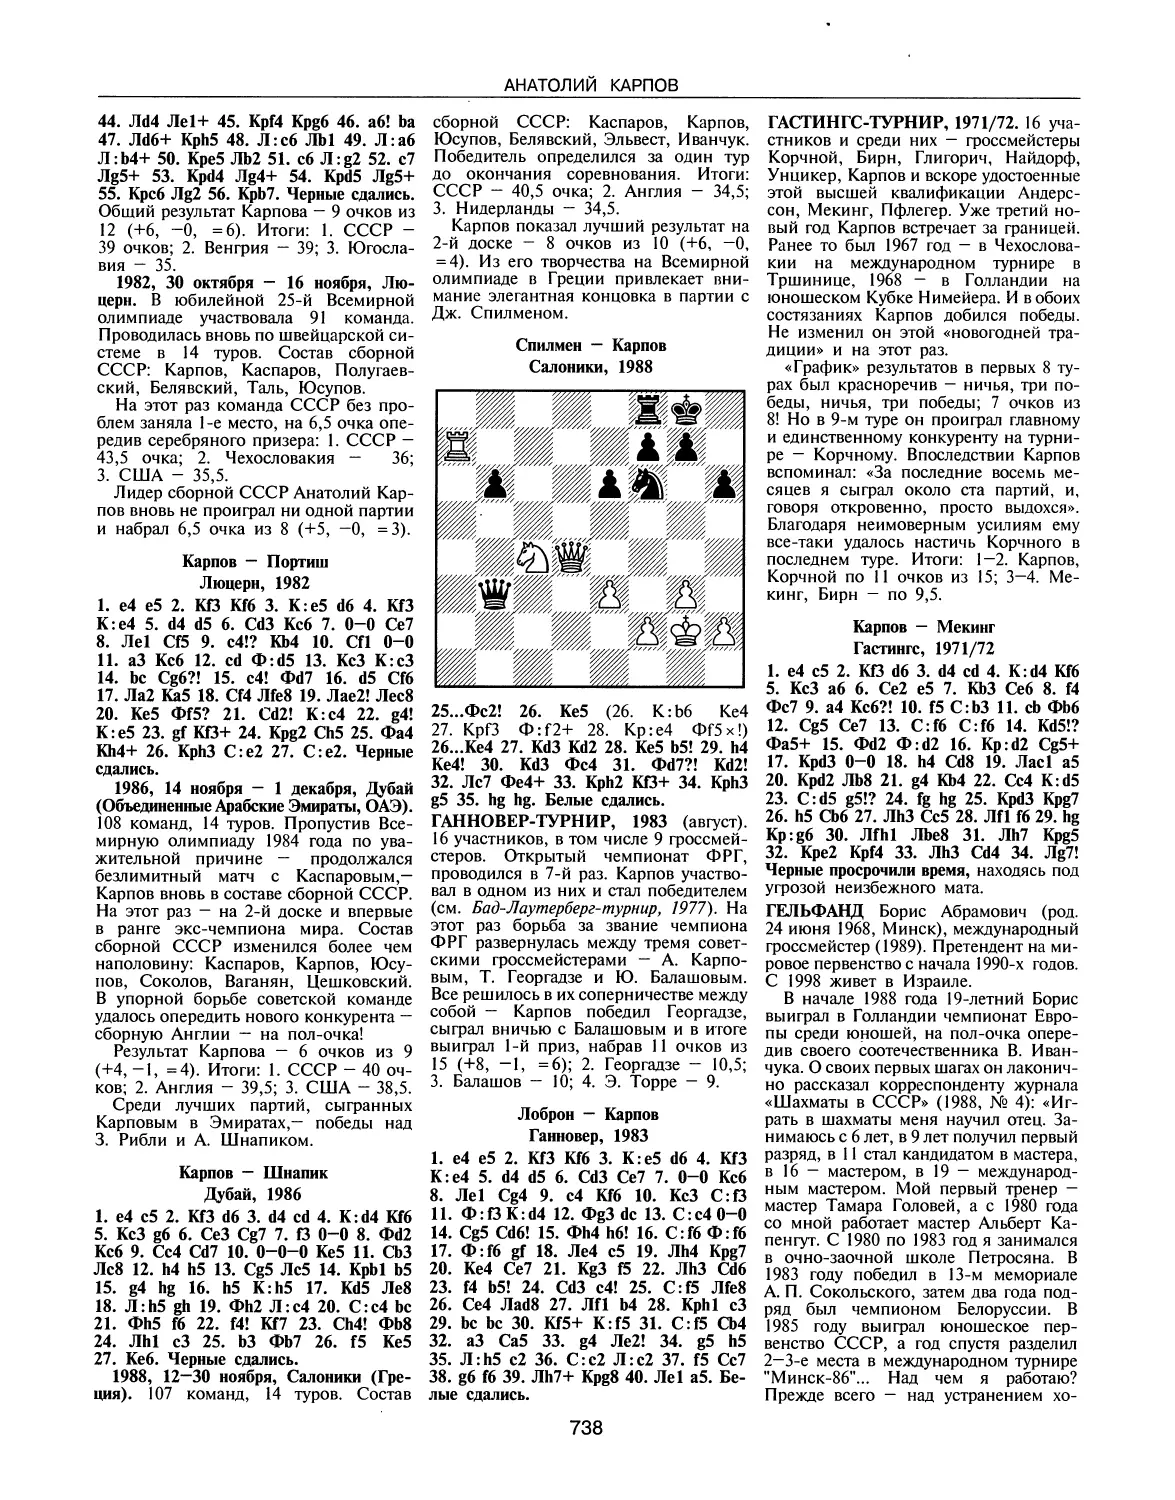 Ганновер-турнир, 1983
Гастингс-турнир, 1971/72
Гельфанд Б.